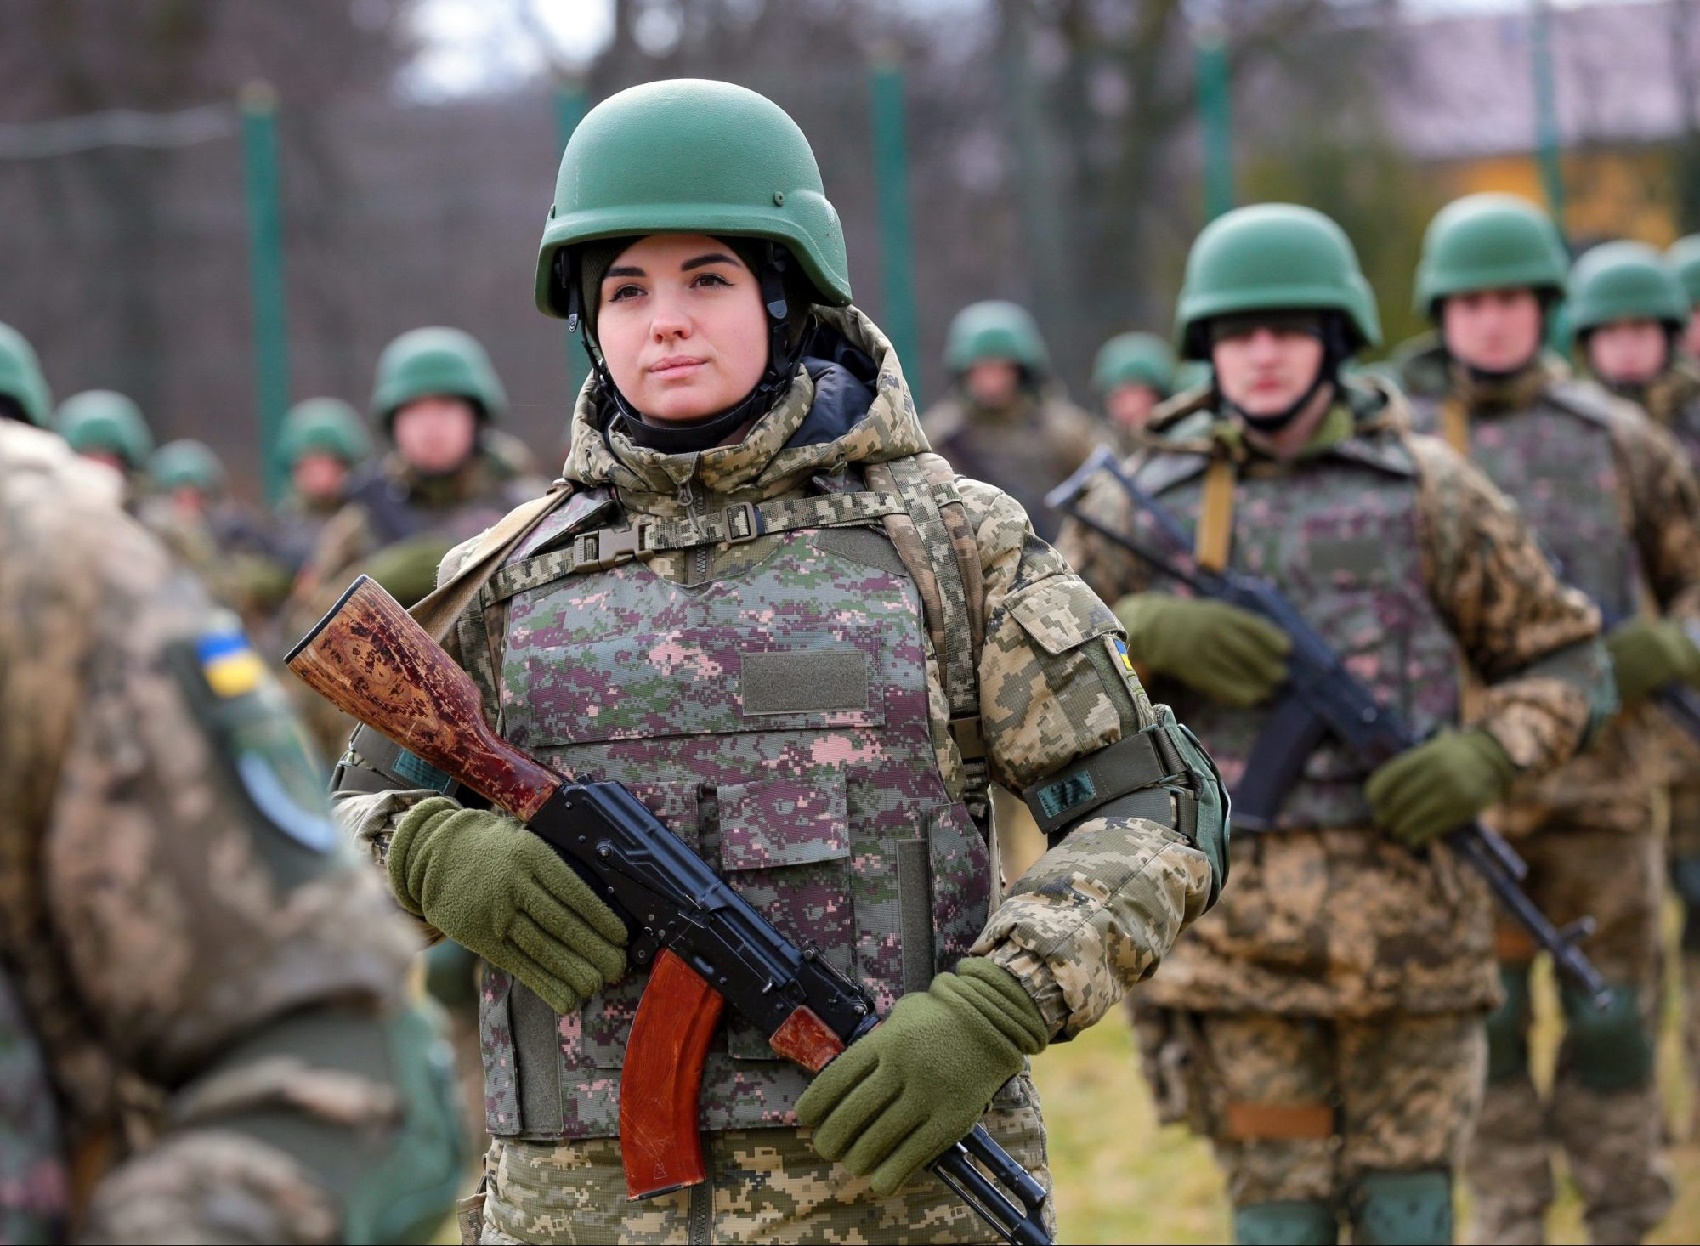 زنان اوکراینی در جنگ